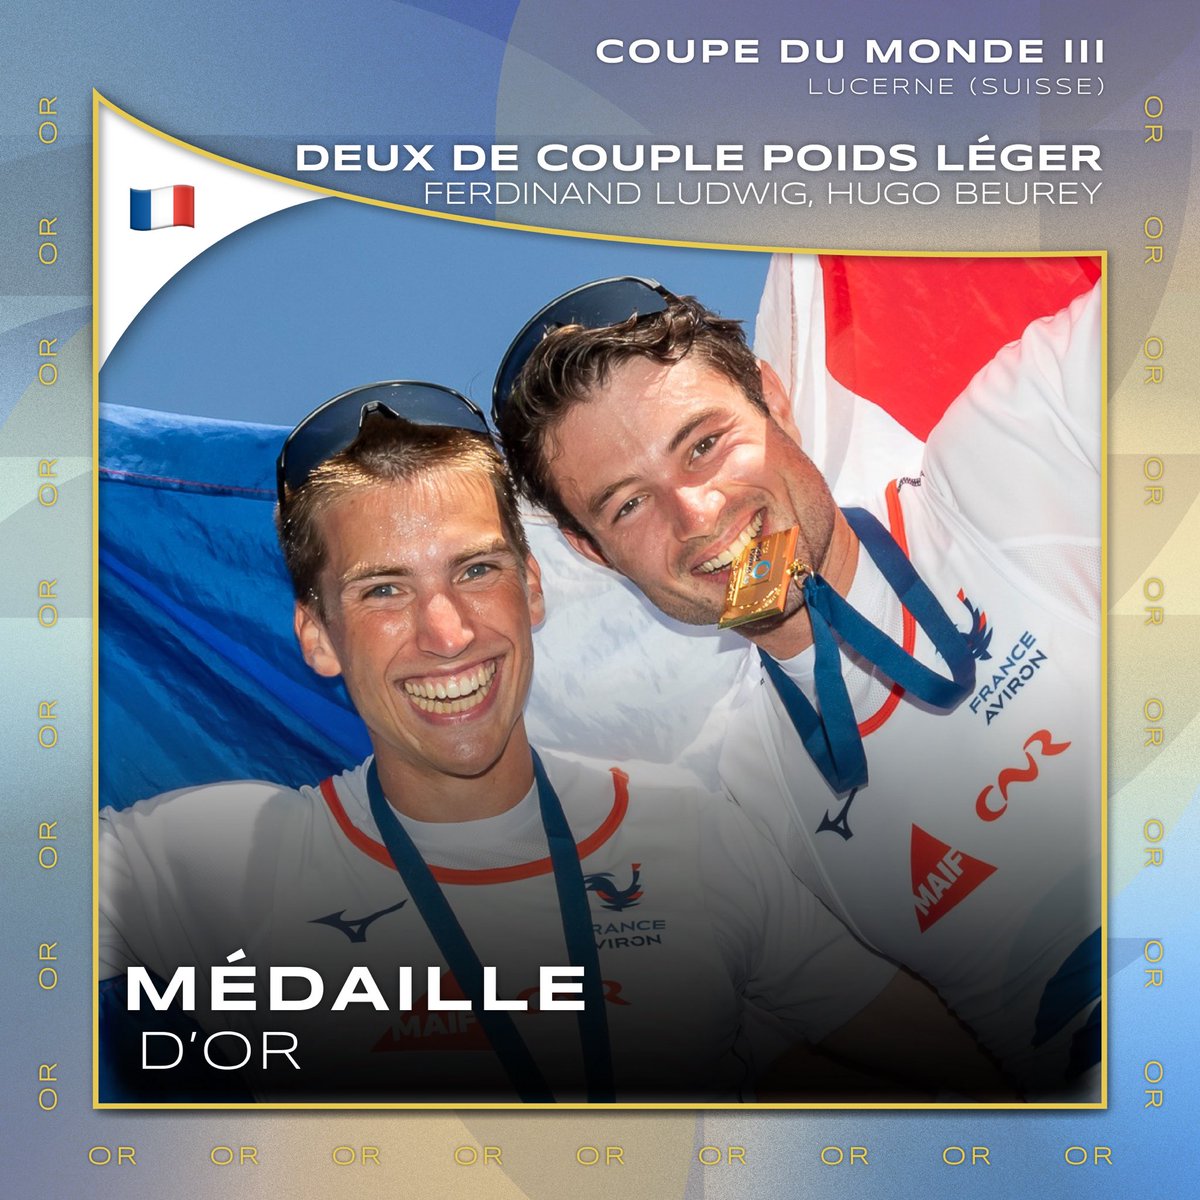 🚣🇨🇭🥇 L’OR POUR FERDINAND LUDWIG ET HUGO BEUREY ! 

Notre deux de couple poids léger s’impose sur le Rotsee et signe ainsi sa première victoire en coupe du monde !

📸 @MediasAviron

-----
#FranceAviron #WRCLucerne #WorldRowingCup
@MAIF @CNR_Officiel @MizunoFrance @lecoqsportif